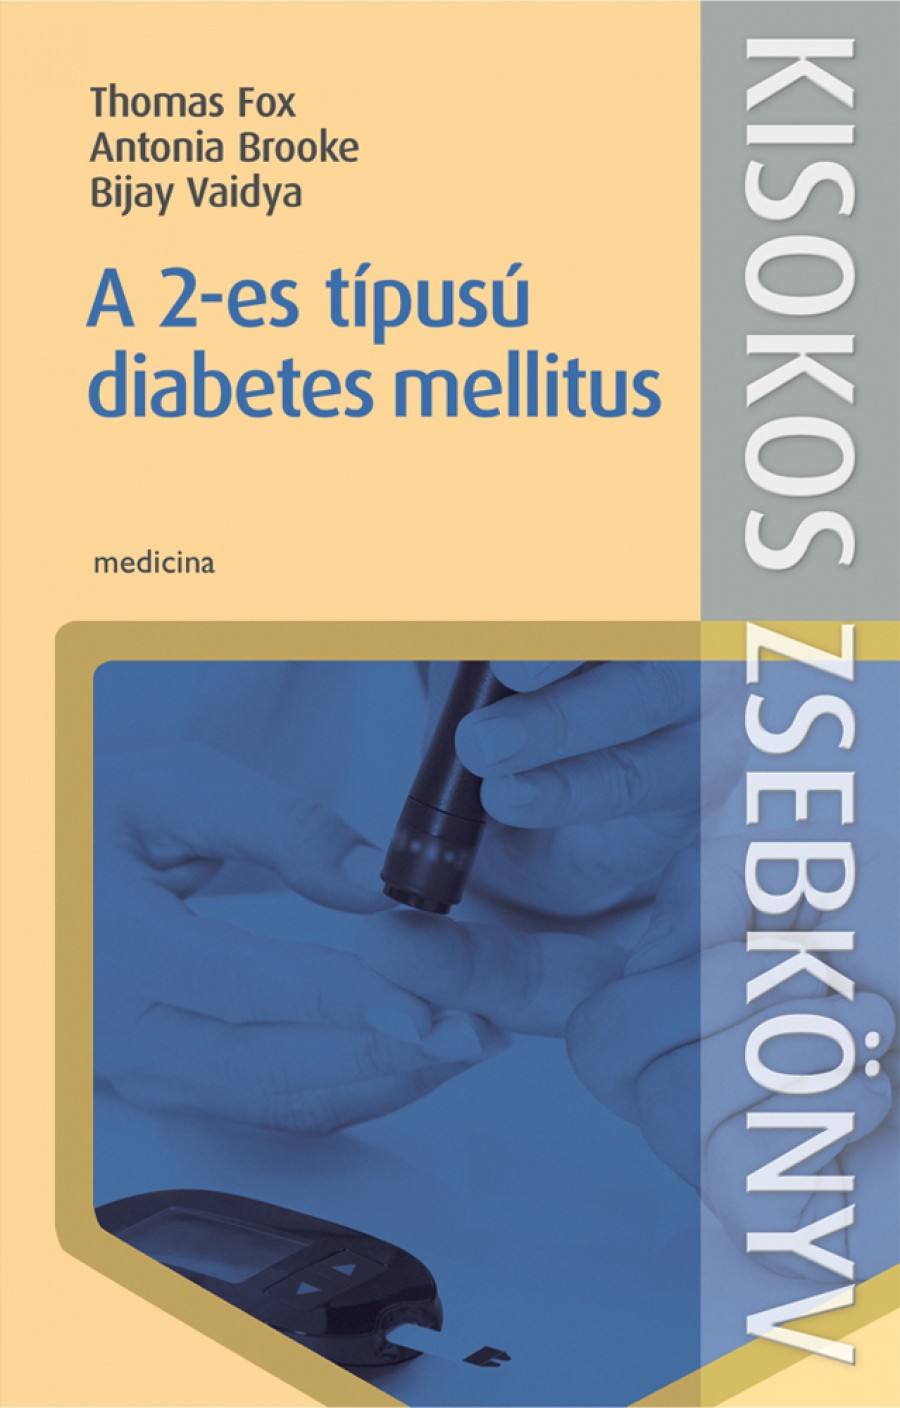 eszközök a diabetes mellitus kezelésében 2)